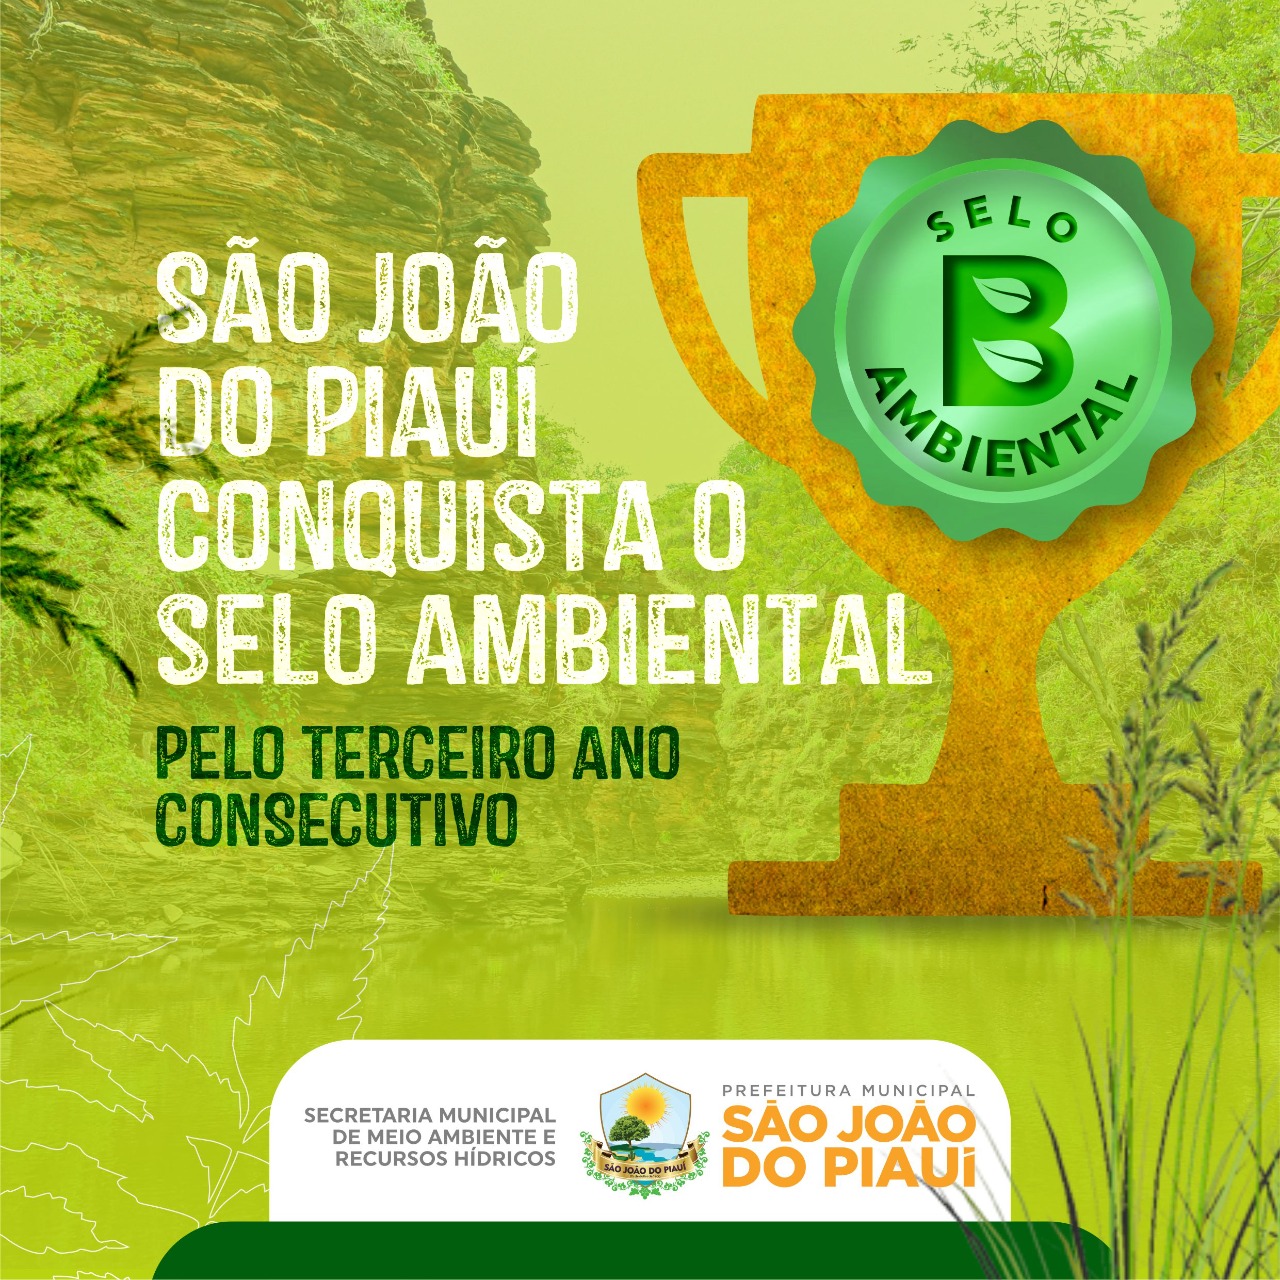 São João do Piauí conquista mais uma vez selo ambiental